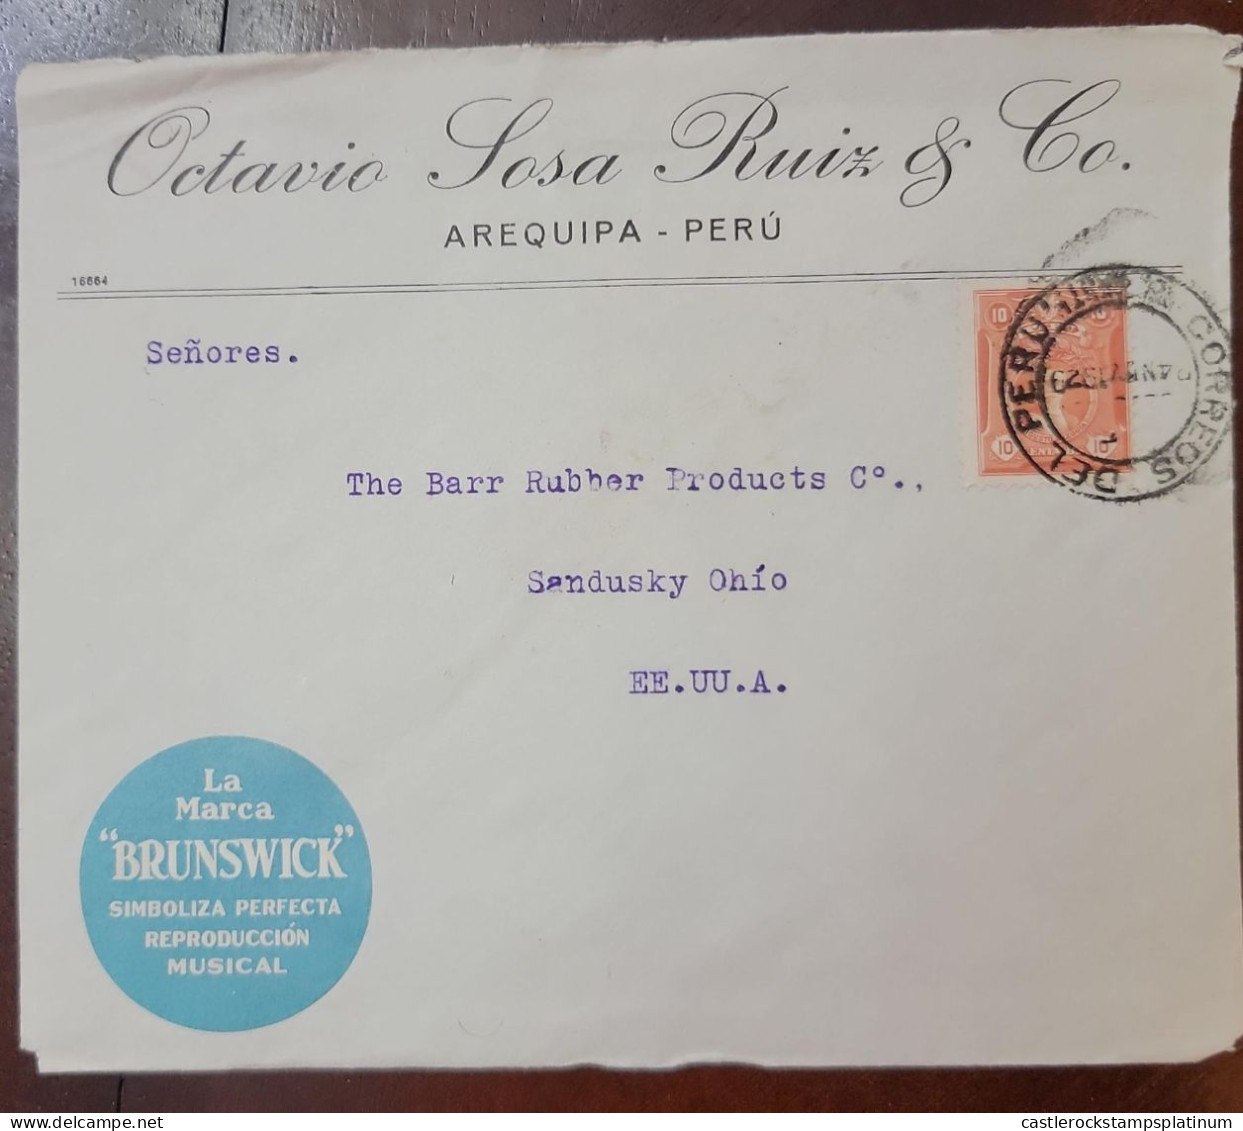 O) 1929 PERU, LEGUIA 10c,  LA MARCA BRUNSWICK, OCTAVIO SOSA  RUIZ - AREQUIPA., CIRCULATED TO USA - Peru